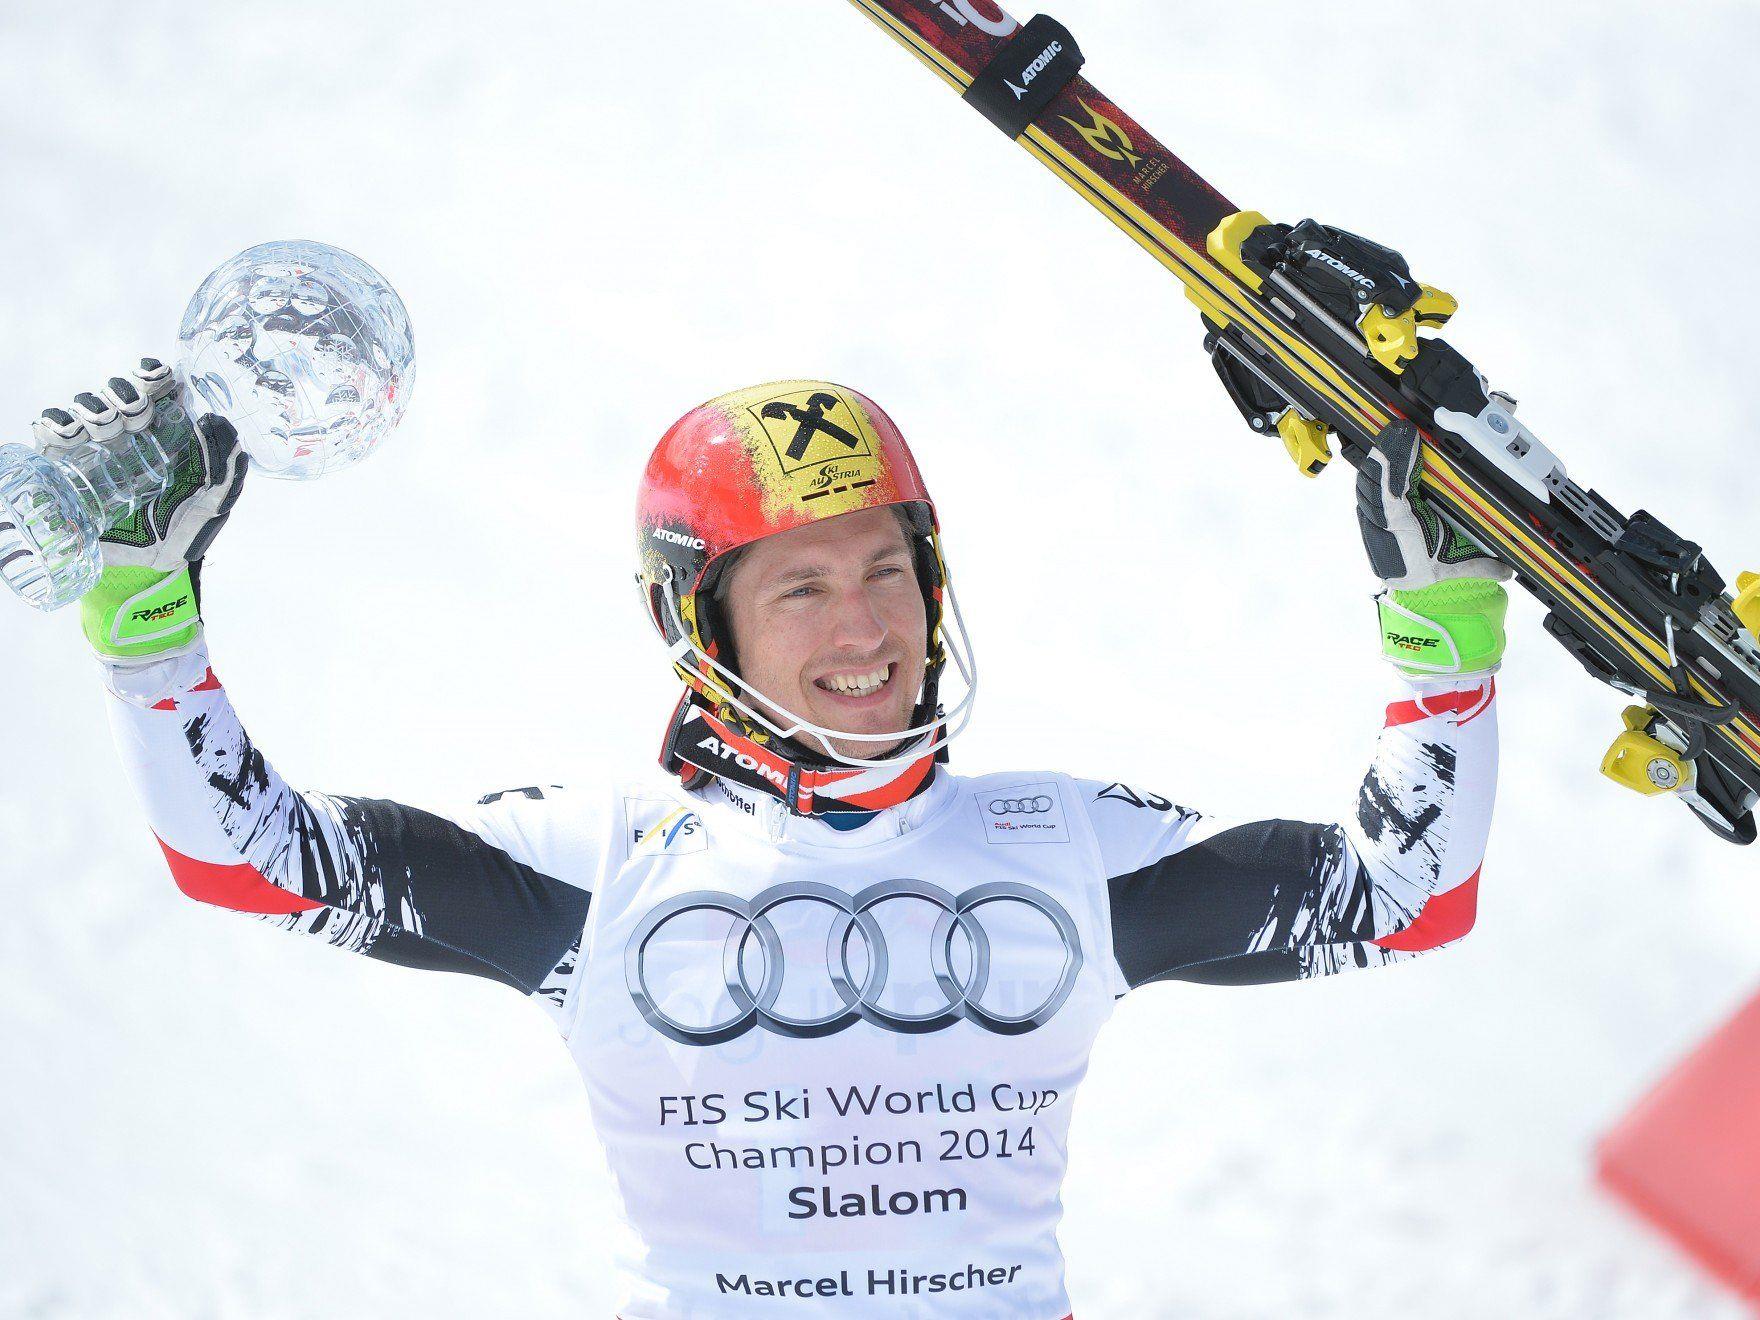 Marcel Hirscher sichert sich nach der großen Kugel für den Gesamtweltcup auch jene für die Disziplinenwertung im Slalom.